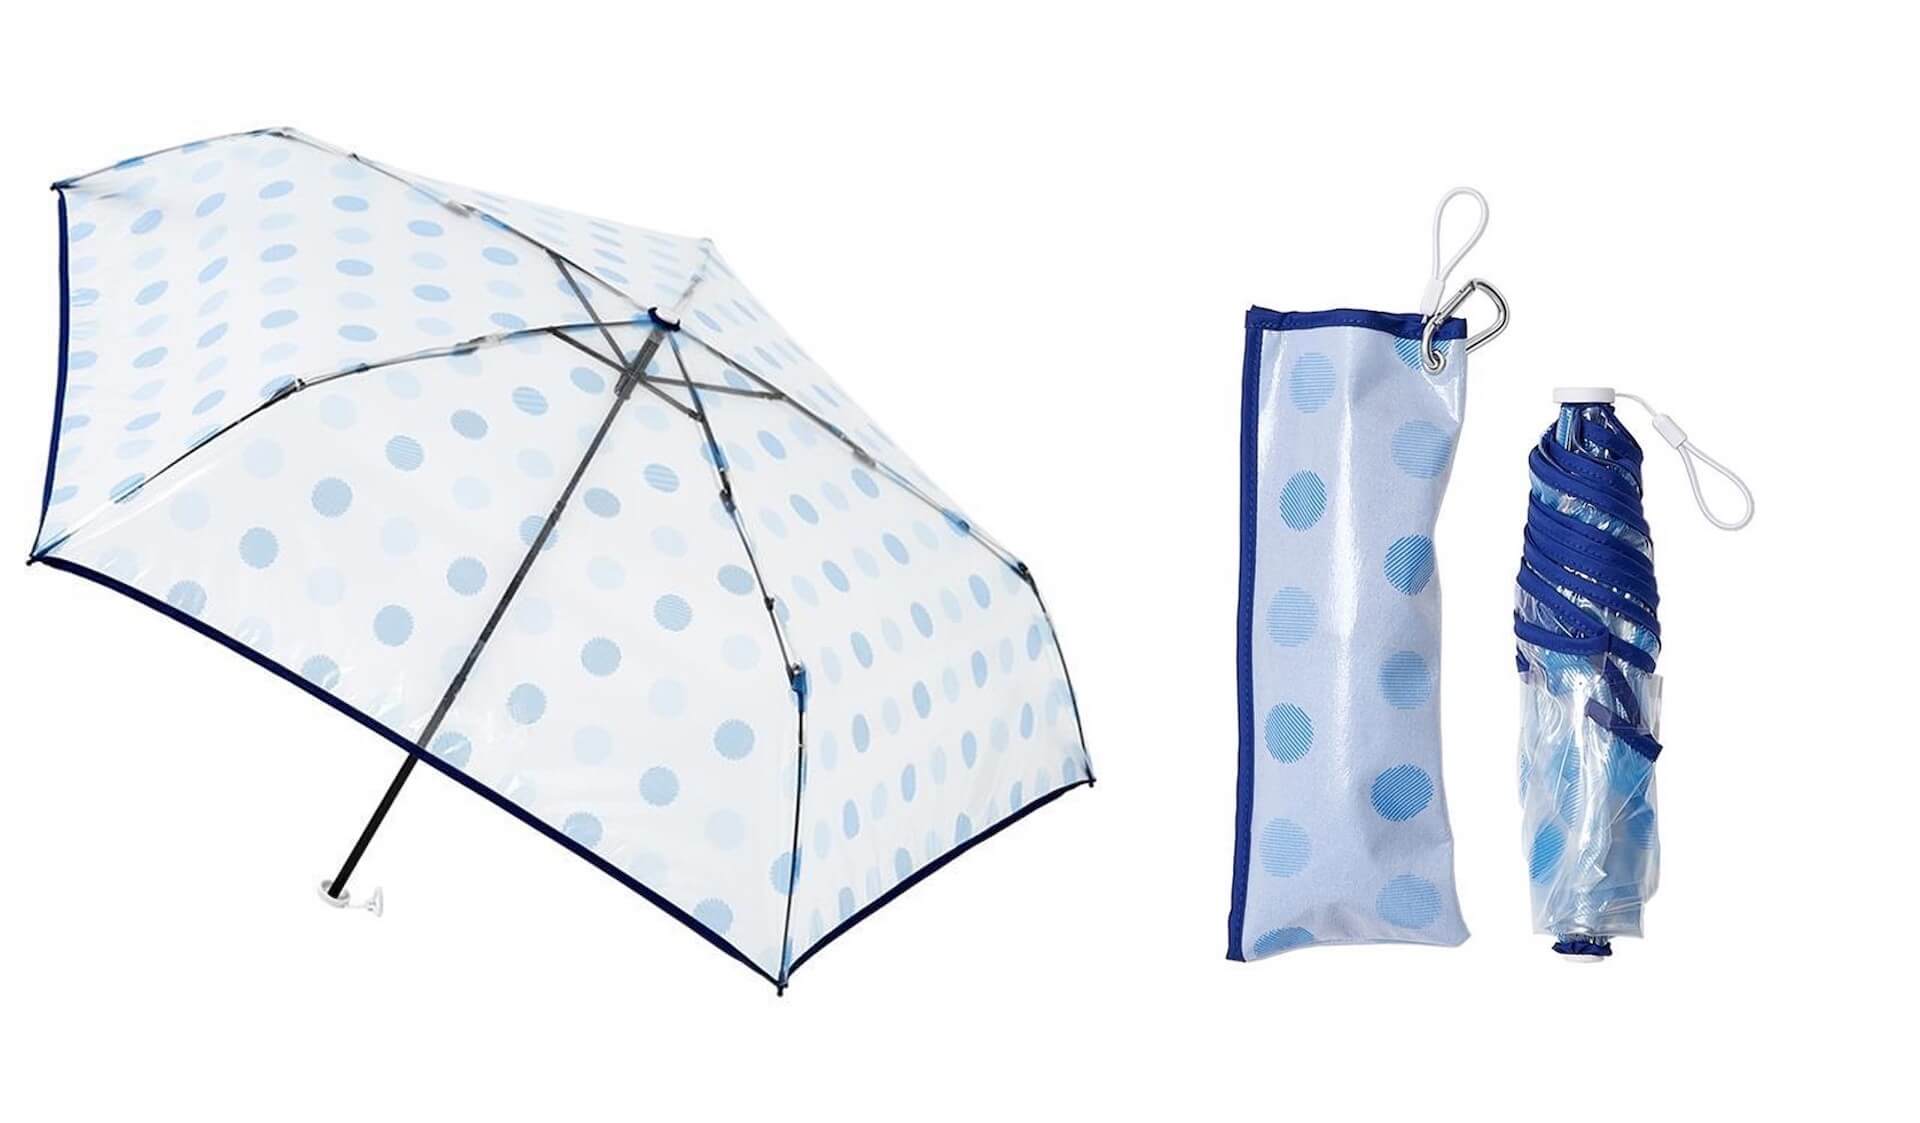 ソーシャルディスタンス確保や熱中症対策などができる最新機能を備えた傘がロフトにて展開中！新作をご紹介 lf200703_umbrella_06